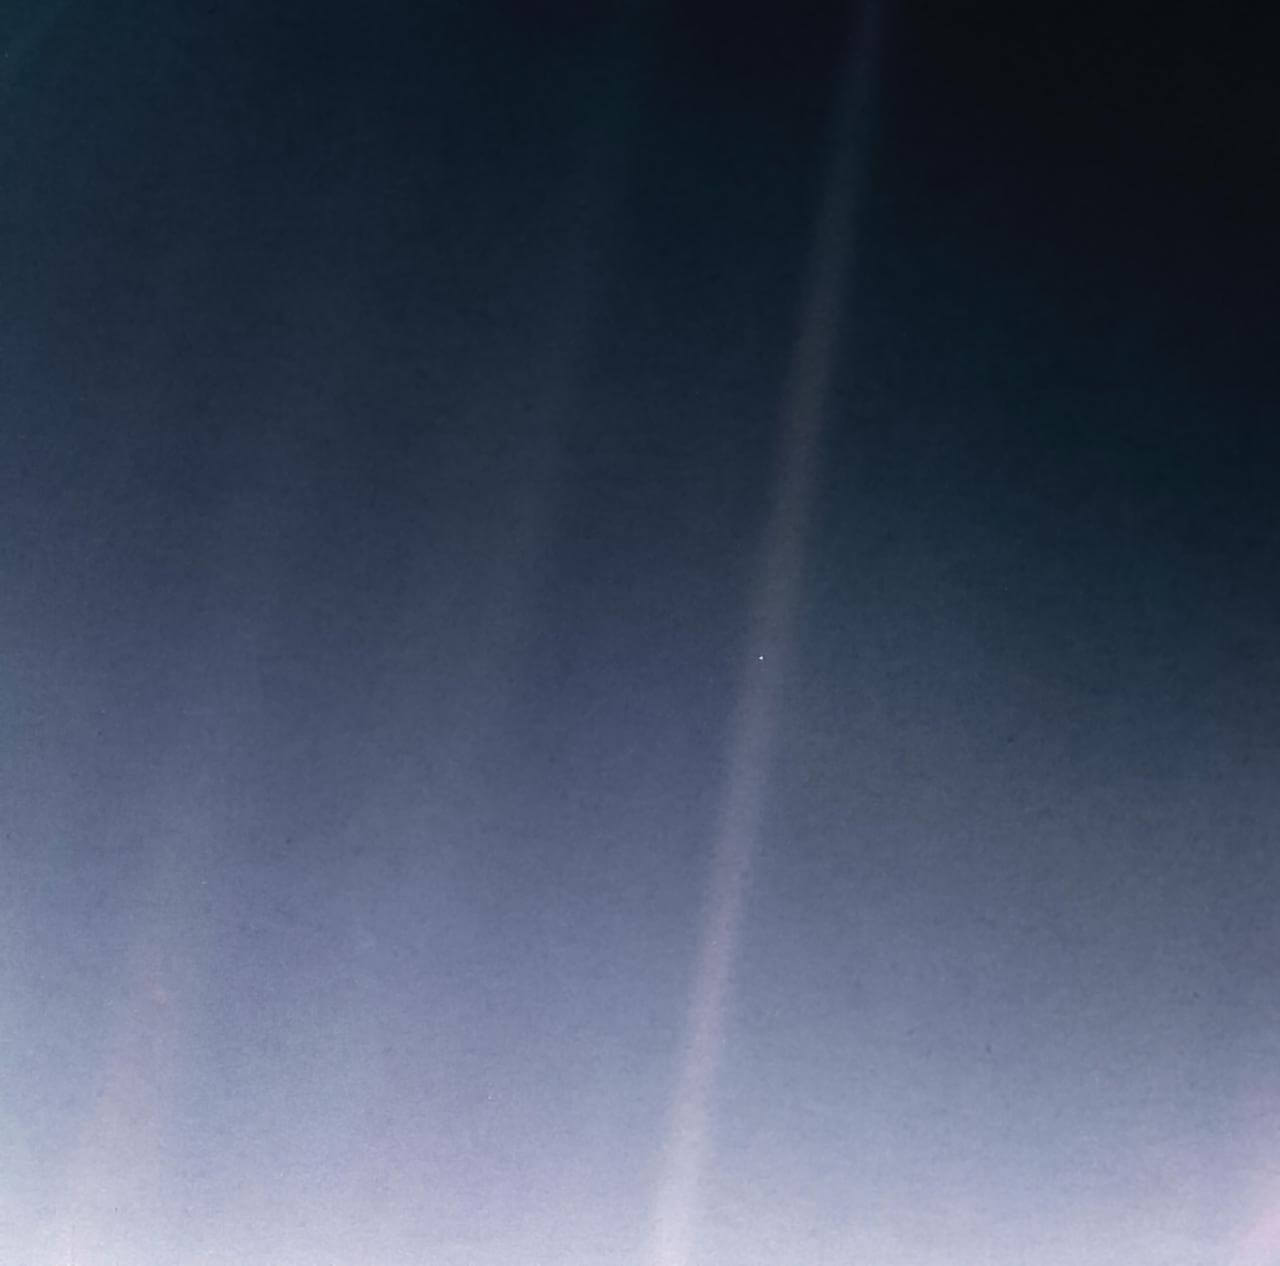 60億km先の点の様な地球「ペイル・ブルー・ドット」【今日の宇宙画像】